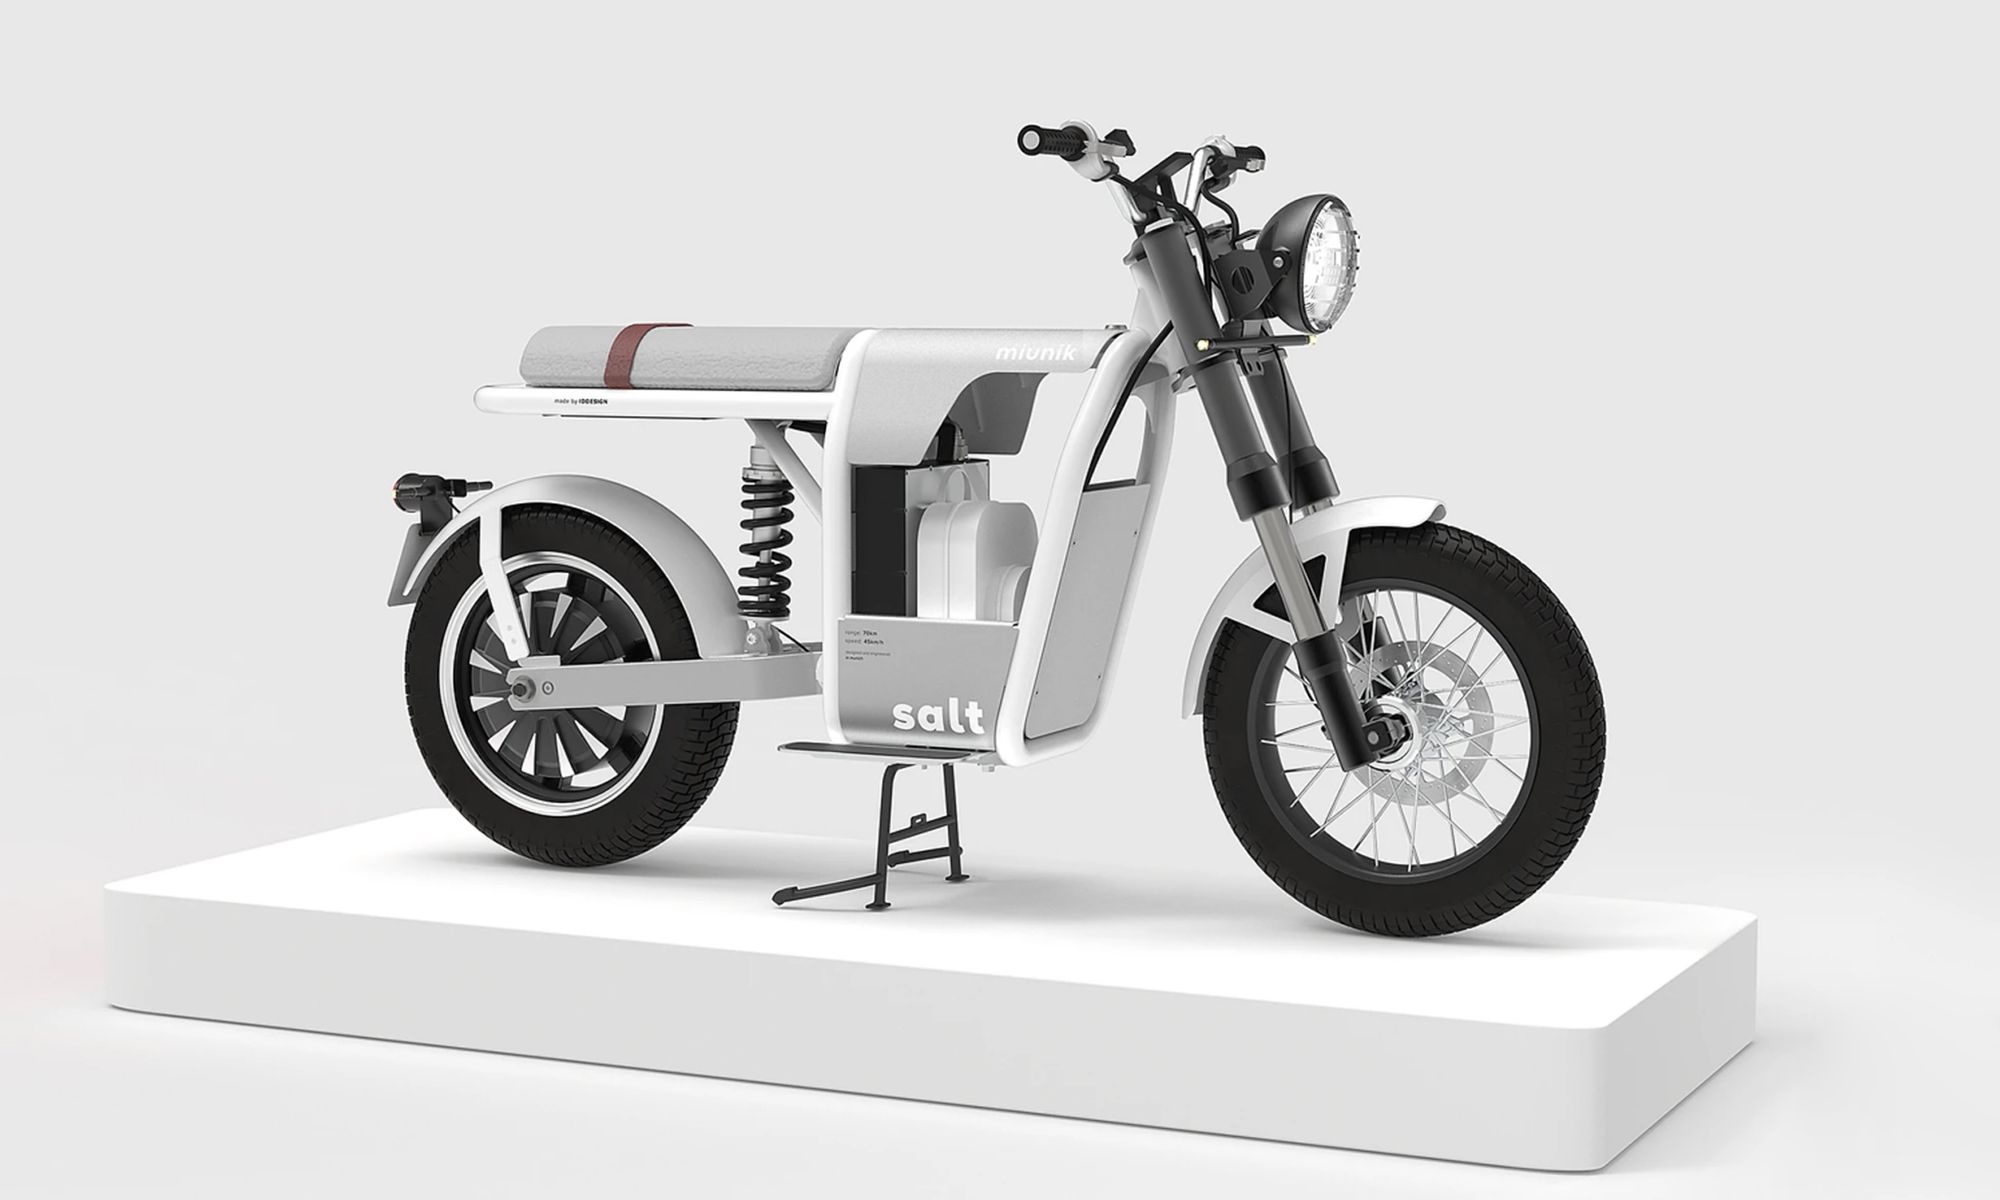 ID Design quiere iniciar las pruebas de desarrollo de su motocicleta eléctrica cuanto antes.